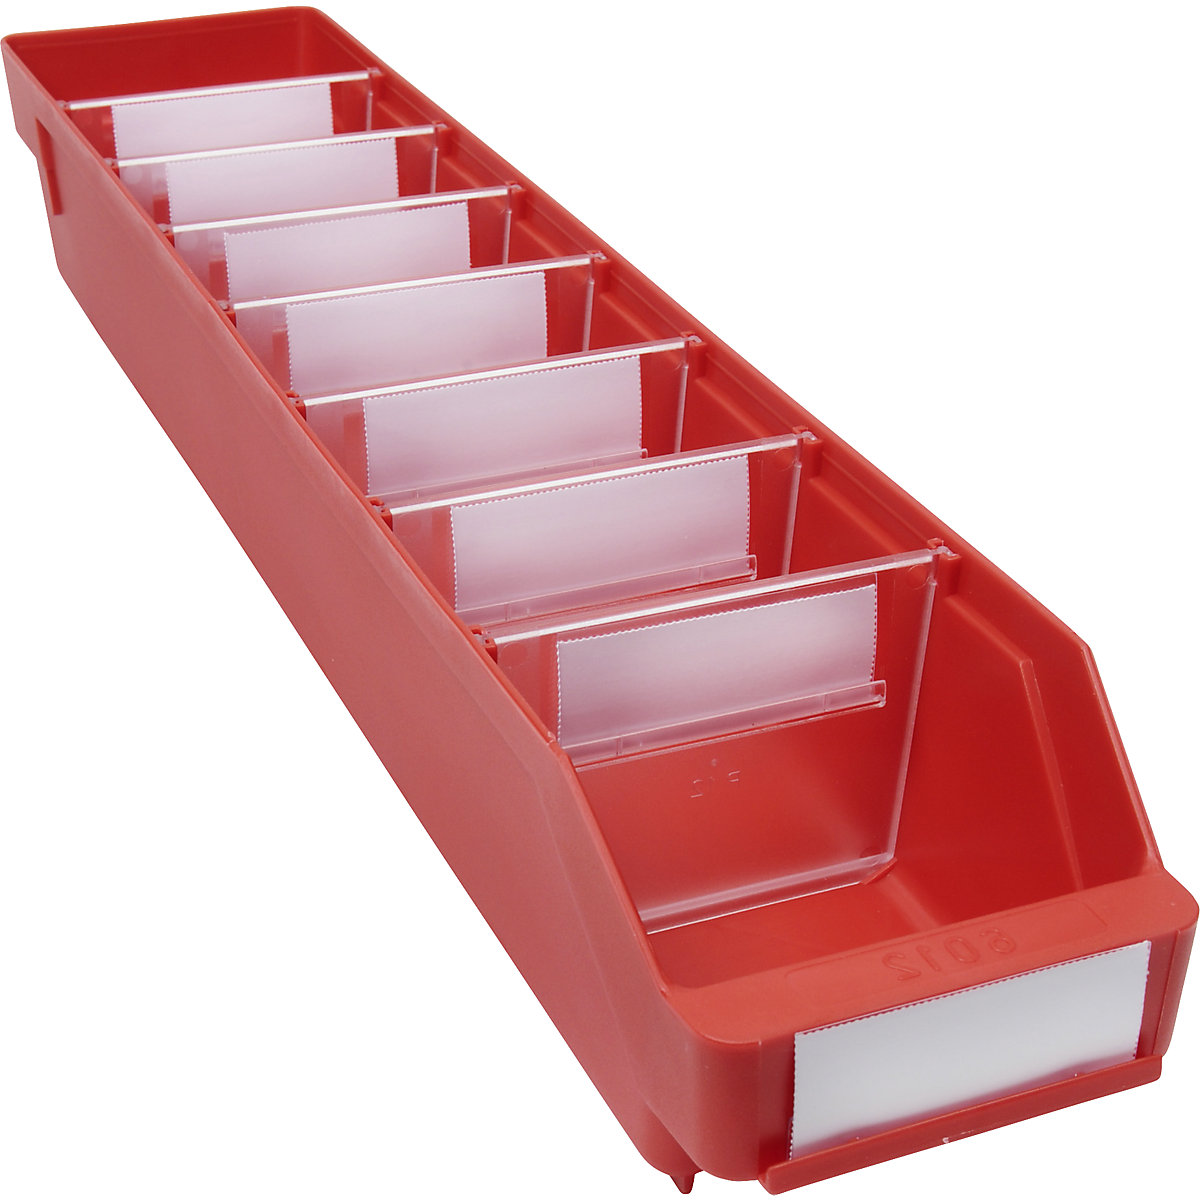 Bac de stockage en polypropylène résistant aux chocs – STEMO, coloris rouge, L x l x h 600 x 118 x 95 mm, lot de 30-7